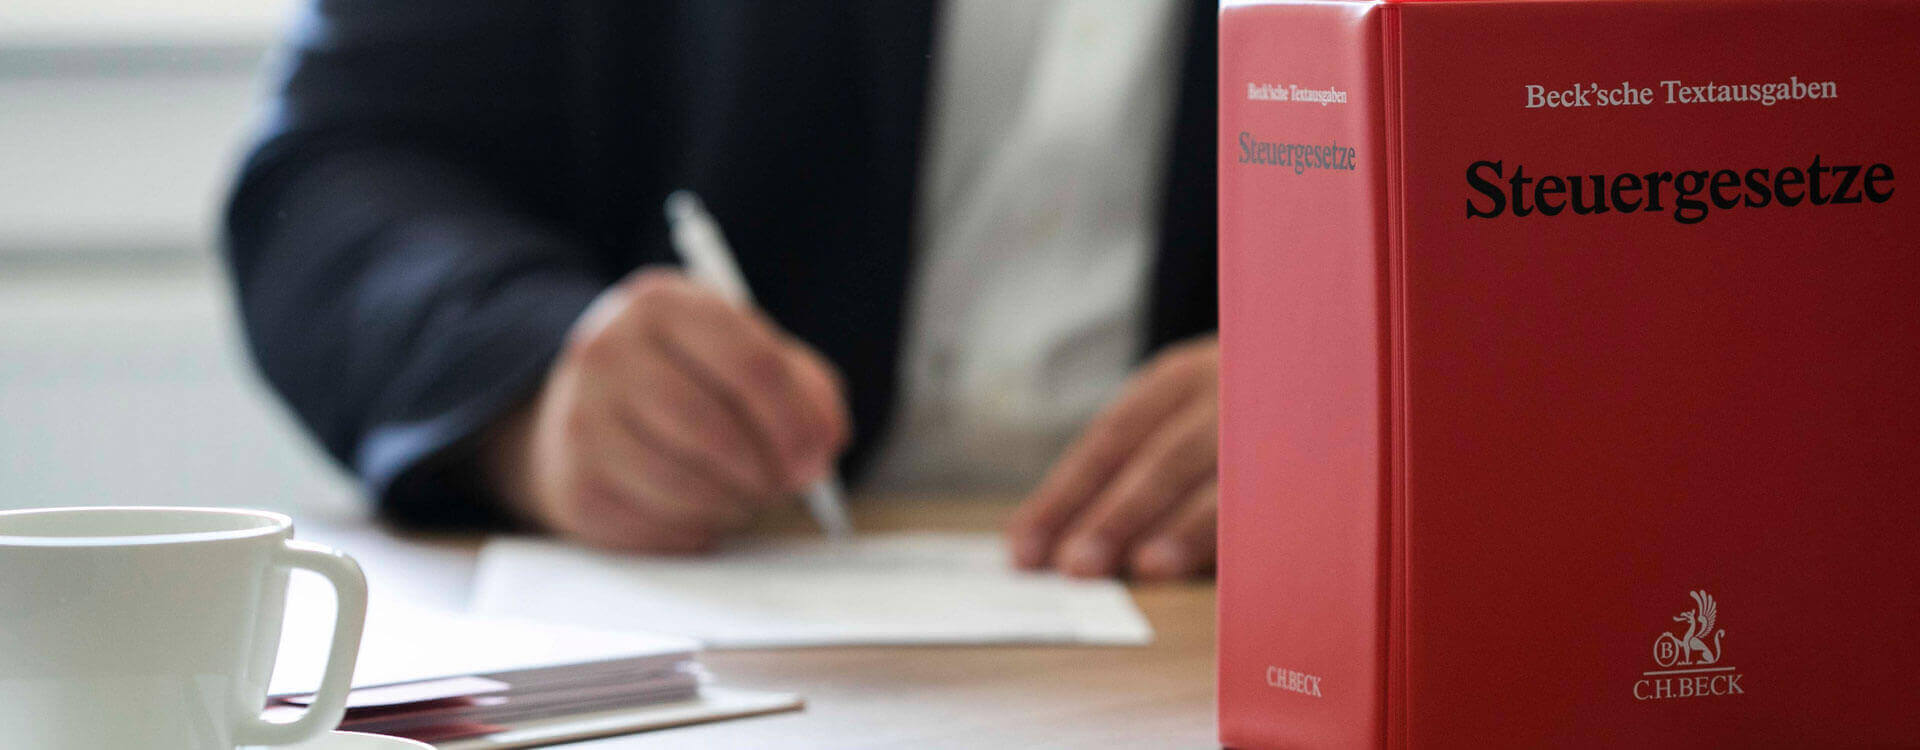 Steuergesetzbuch auf einem Tisch - Steuerberater Christian Lübbers